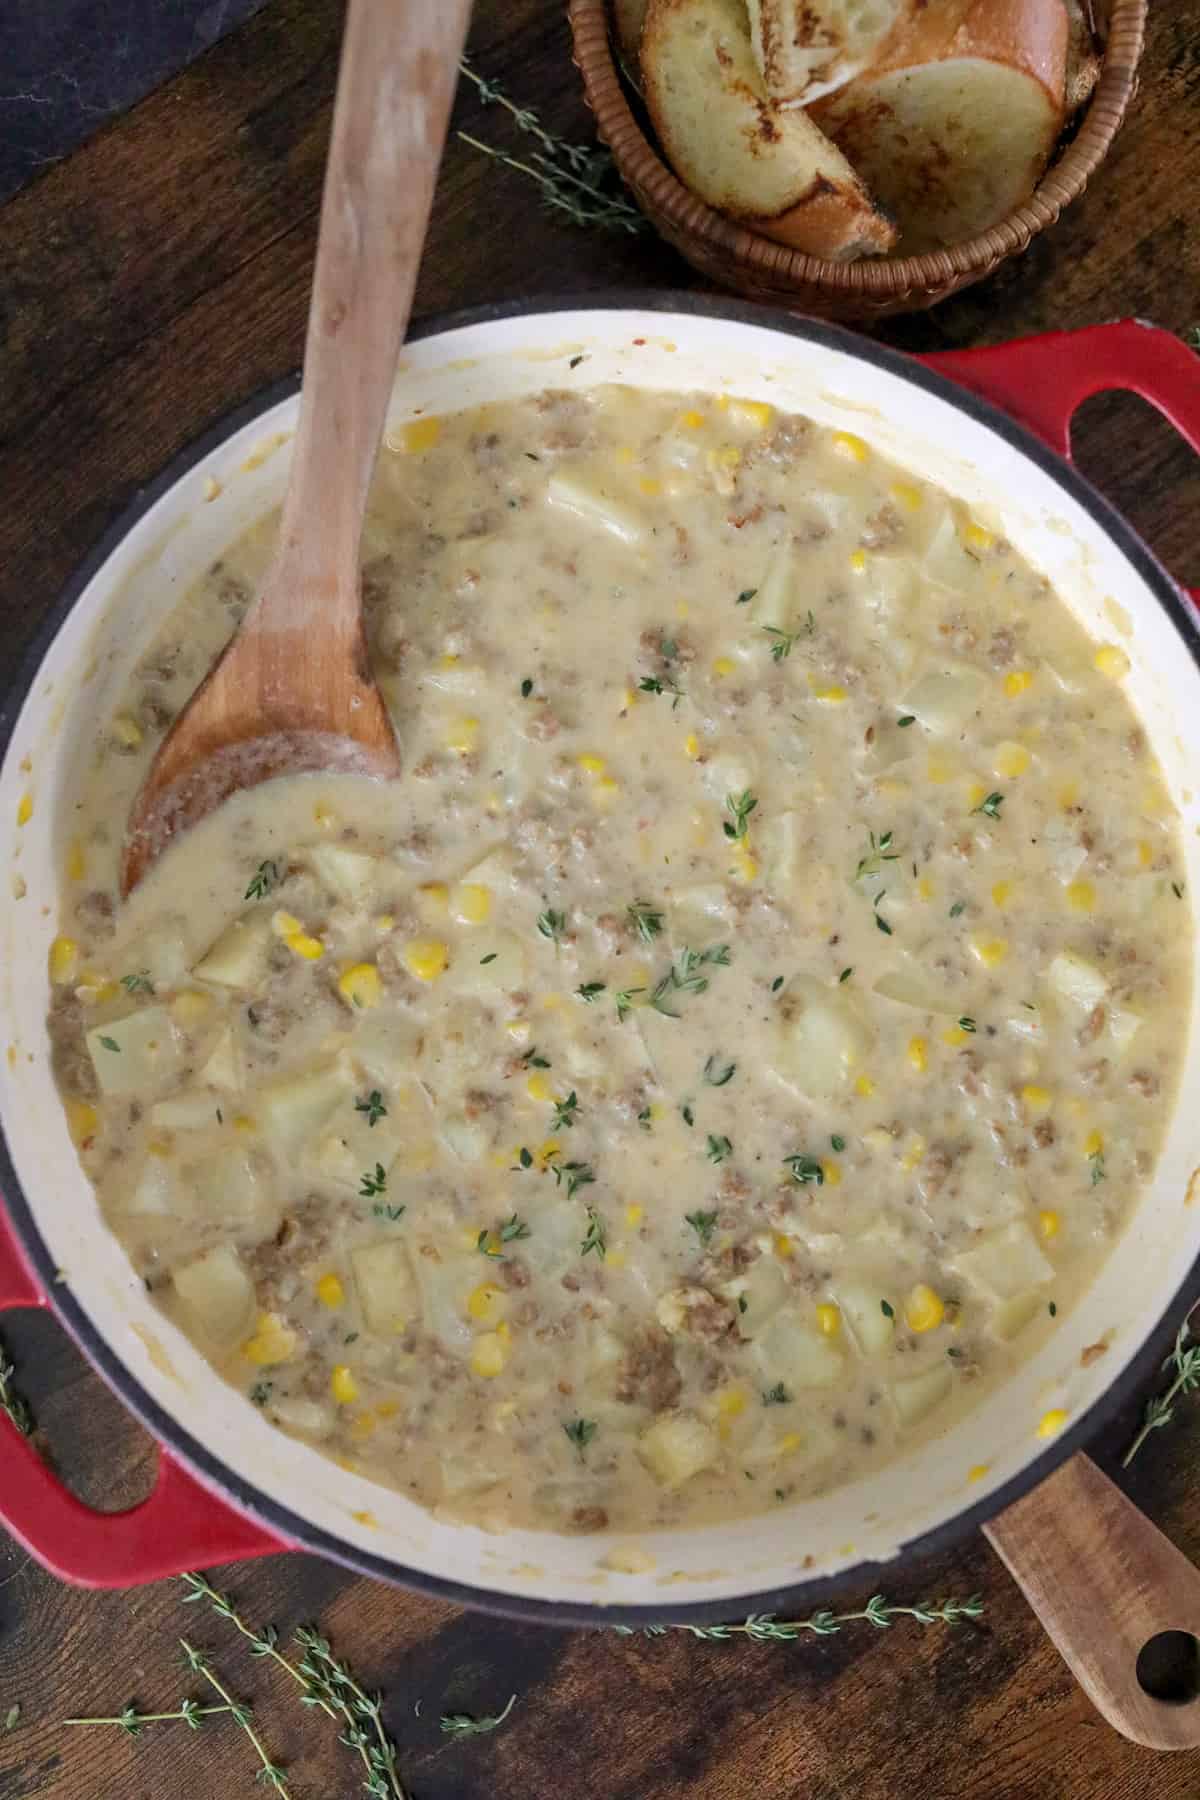 Corn chowder simmering.